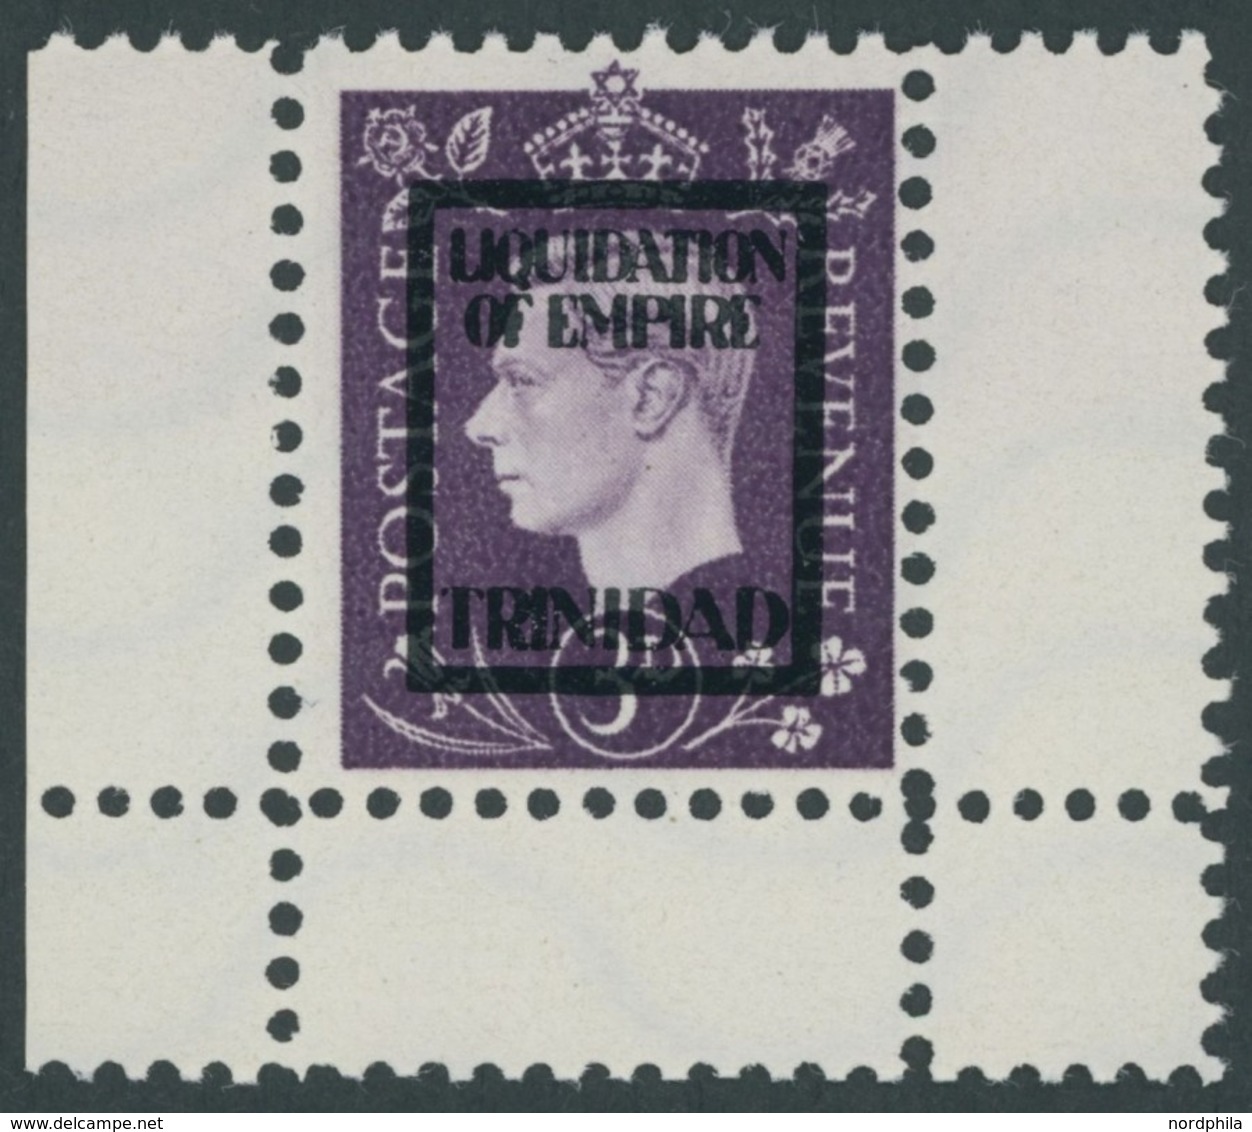 PROPAGANDAFÄLSCHUNGEN 14IVe (*), Deutsche Propagandamarken Für Großbritannien: 1944, 3 P. König Georg VI, Aufdruck Trini - Occupation 1938-45